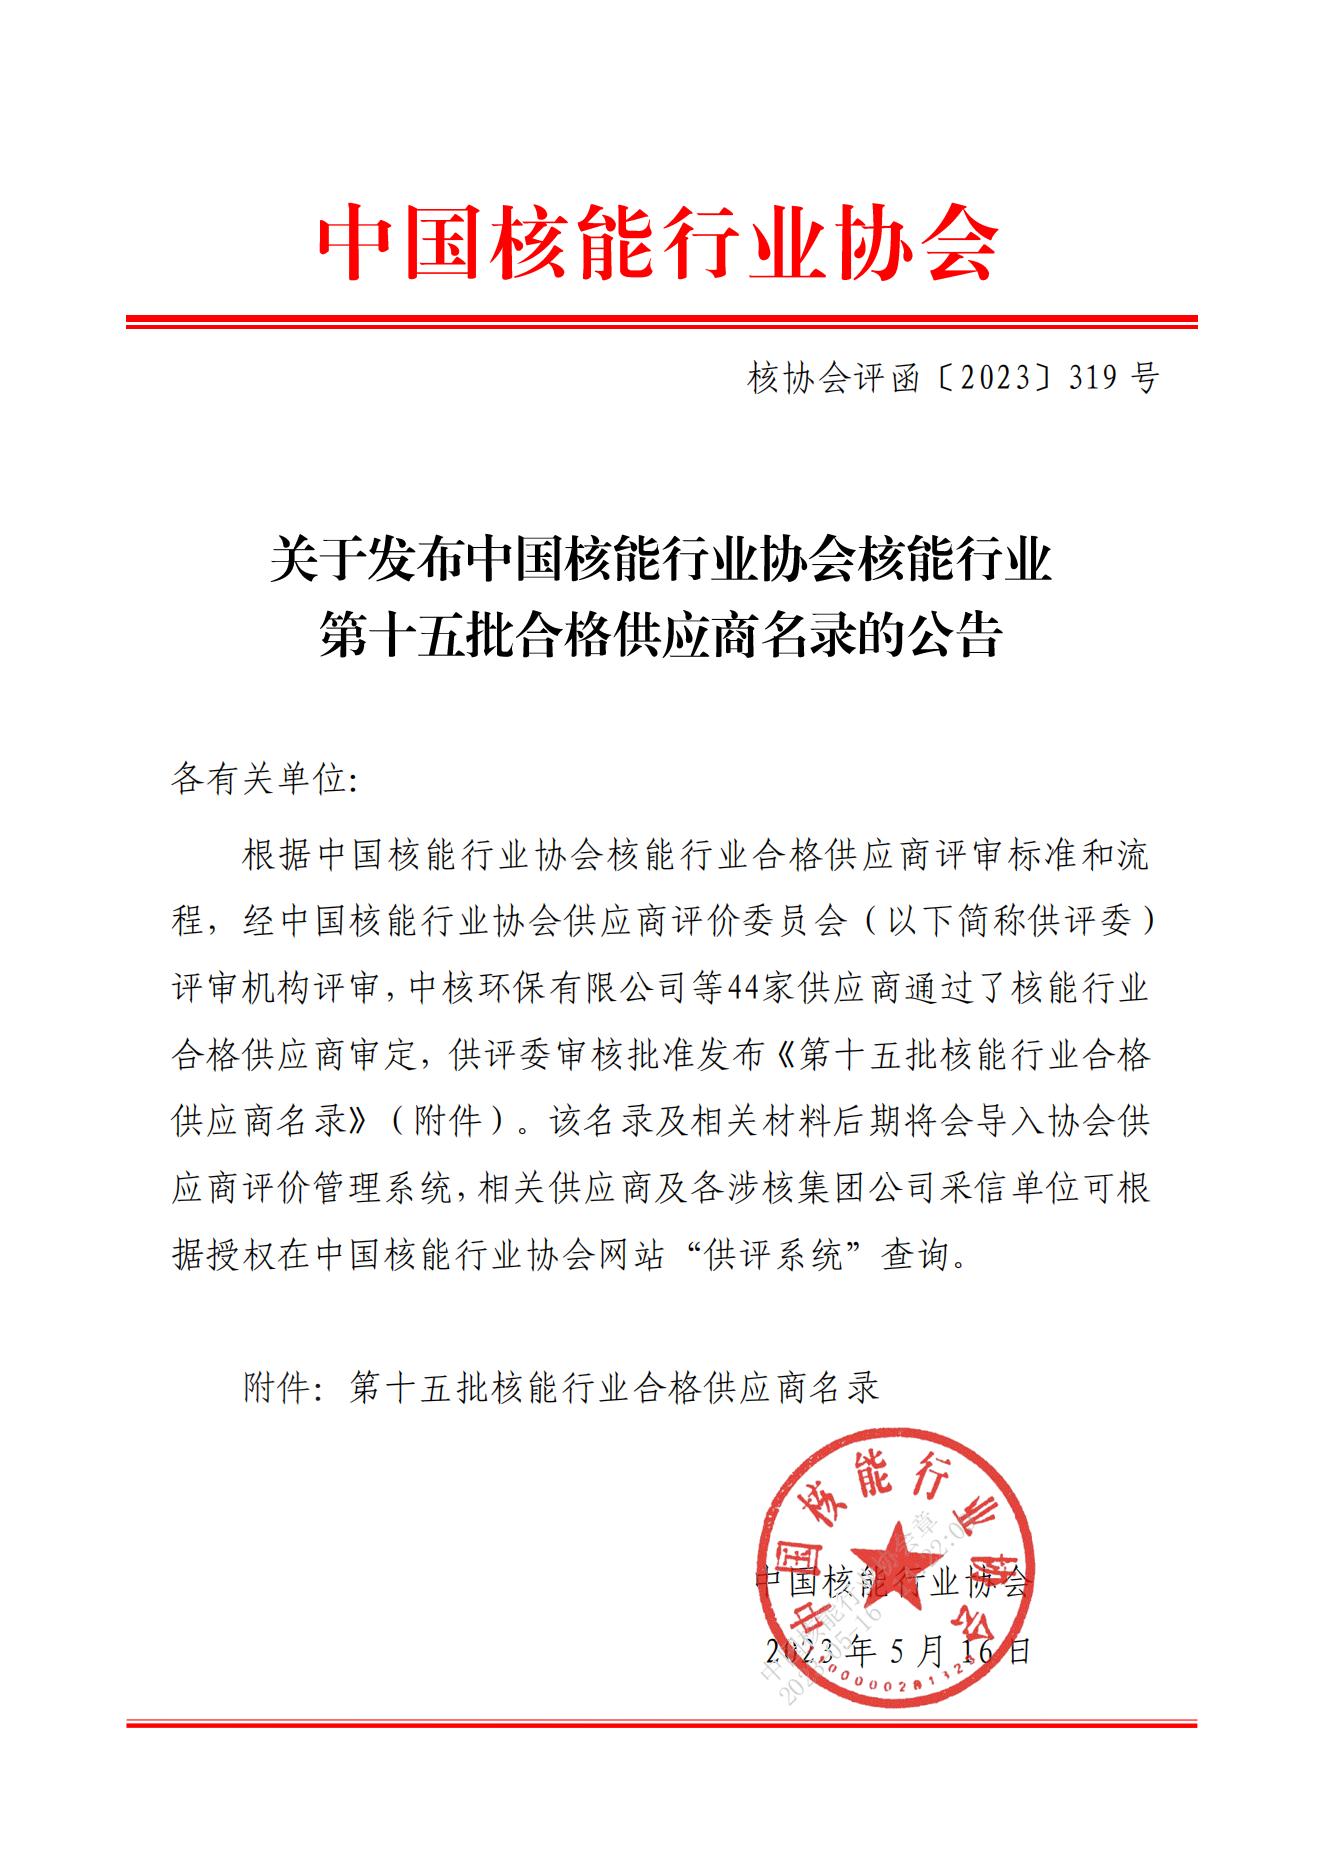 关于发布中国核能行业协会核能行业第十五批合格供应商名录的公告_00.jpg